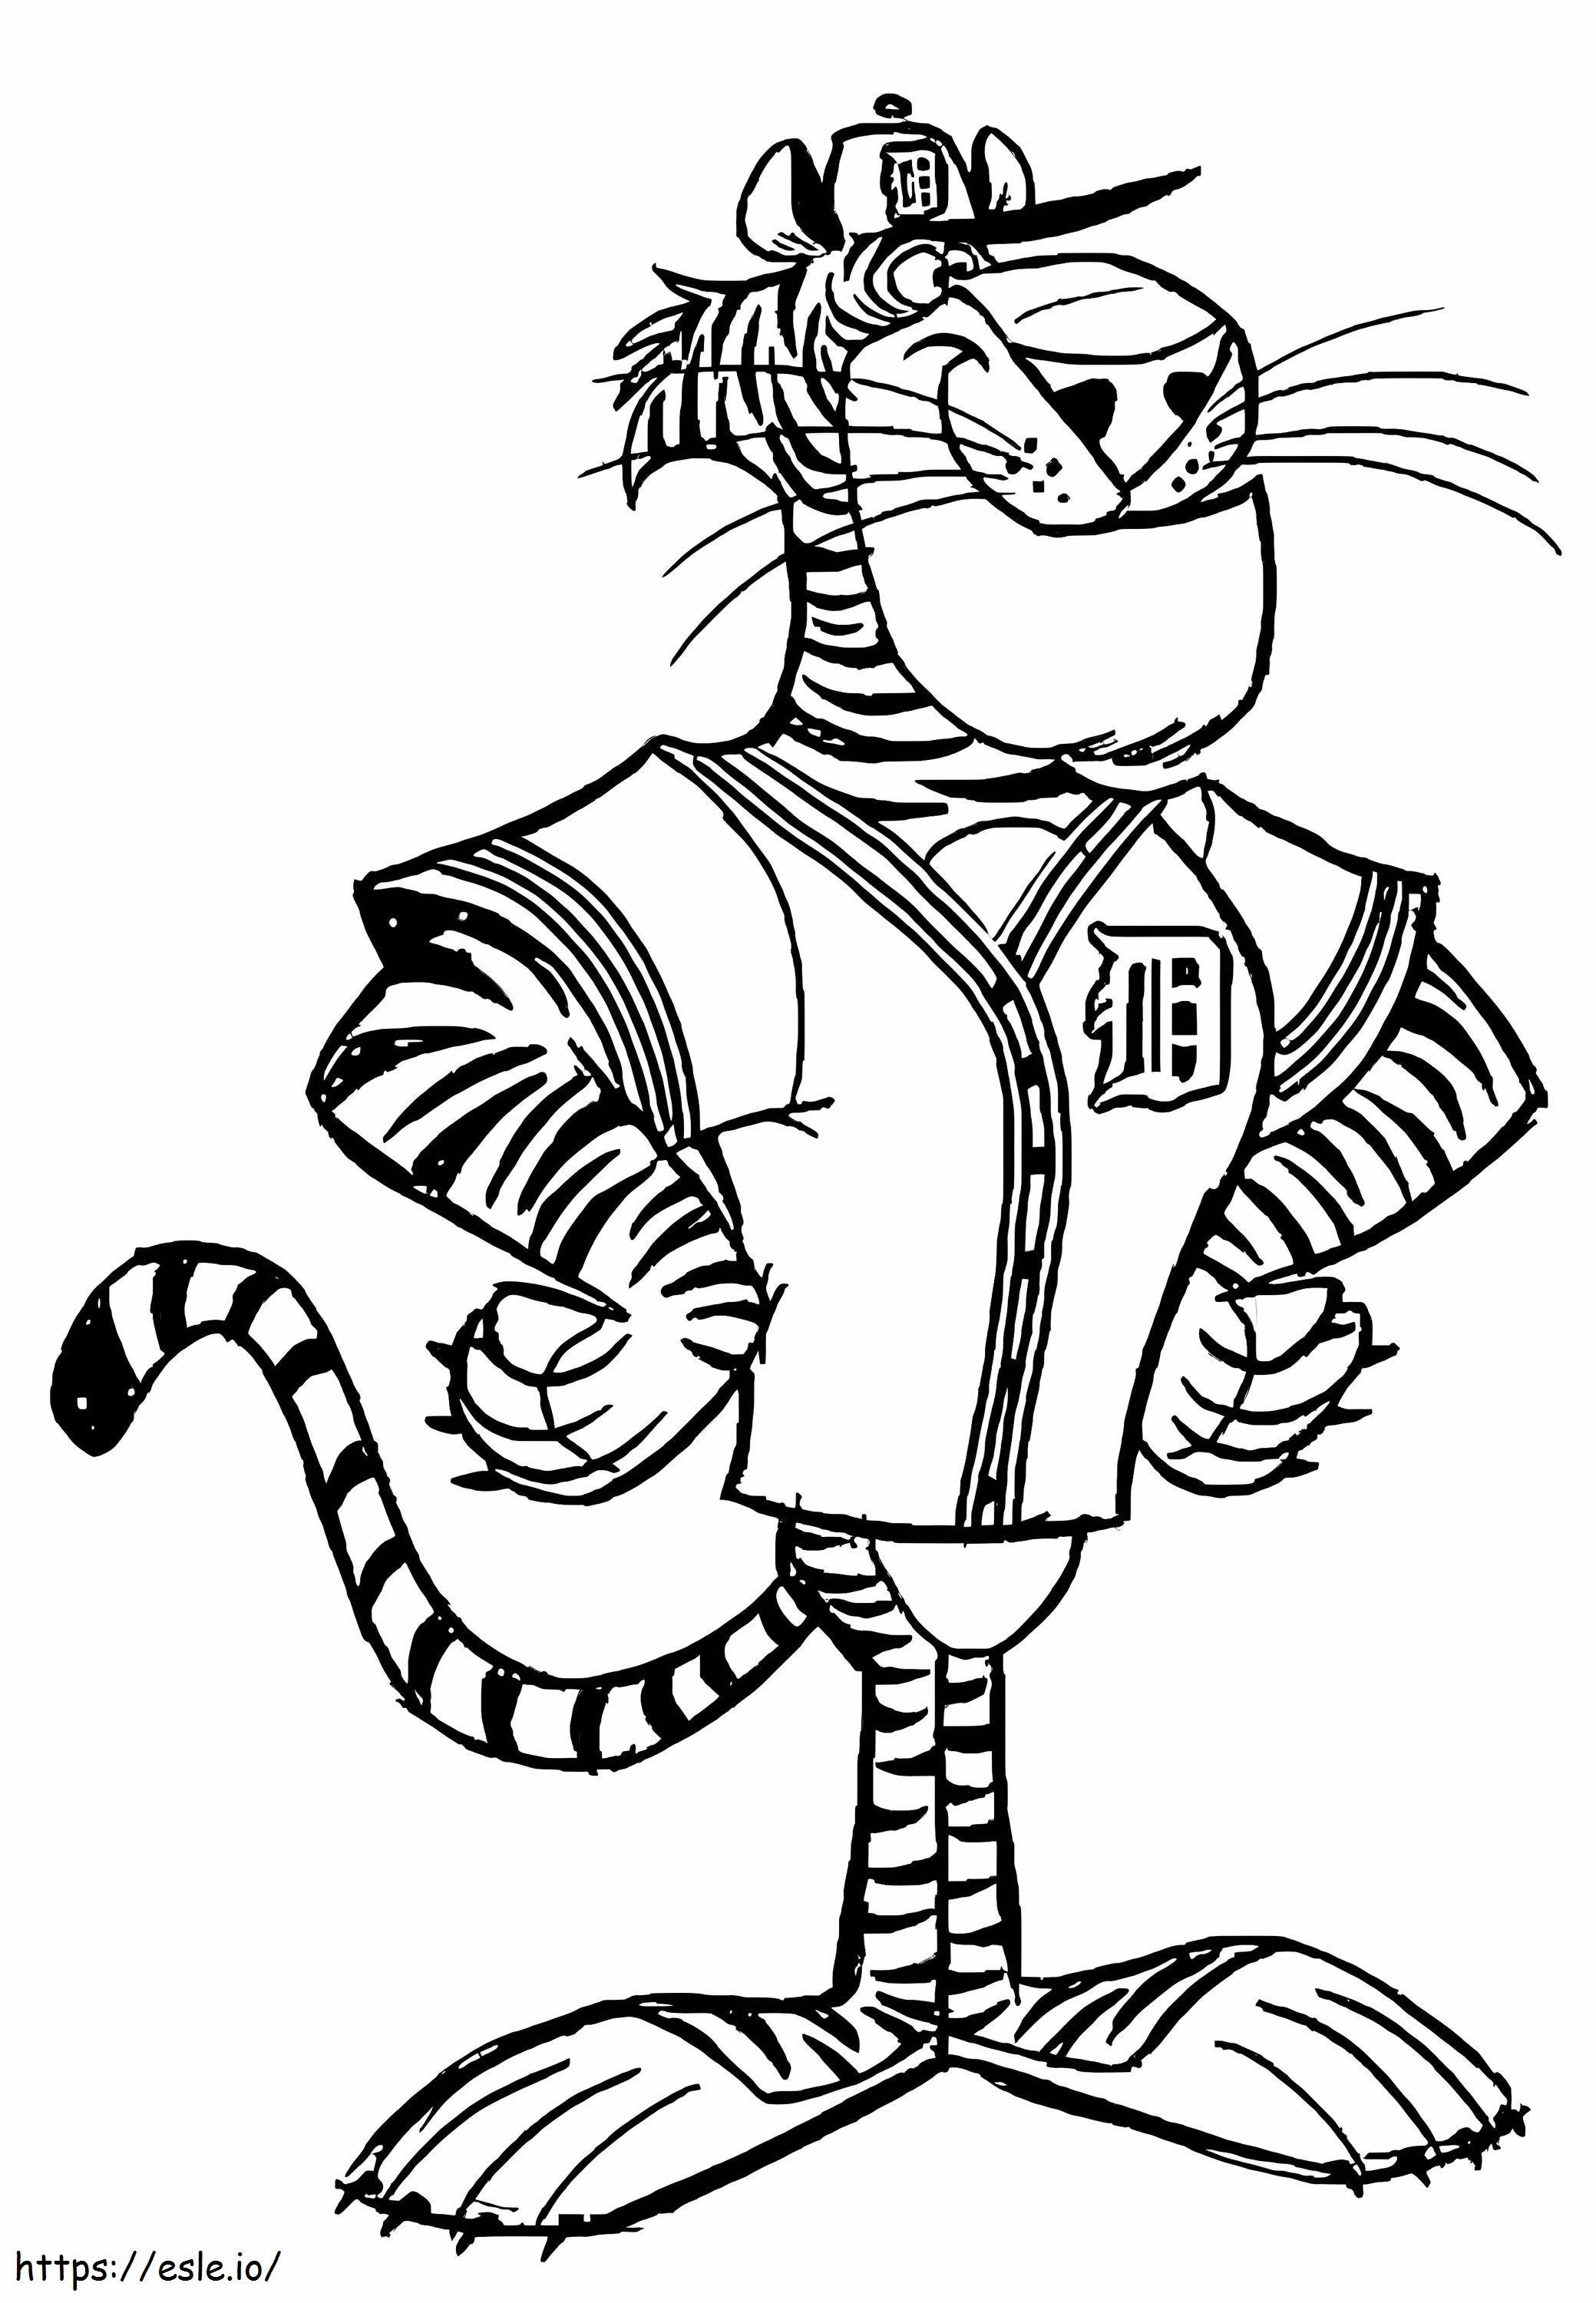 Funny Cartoon Tiger coloring page